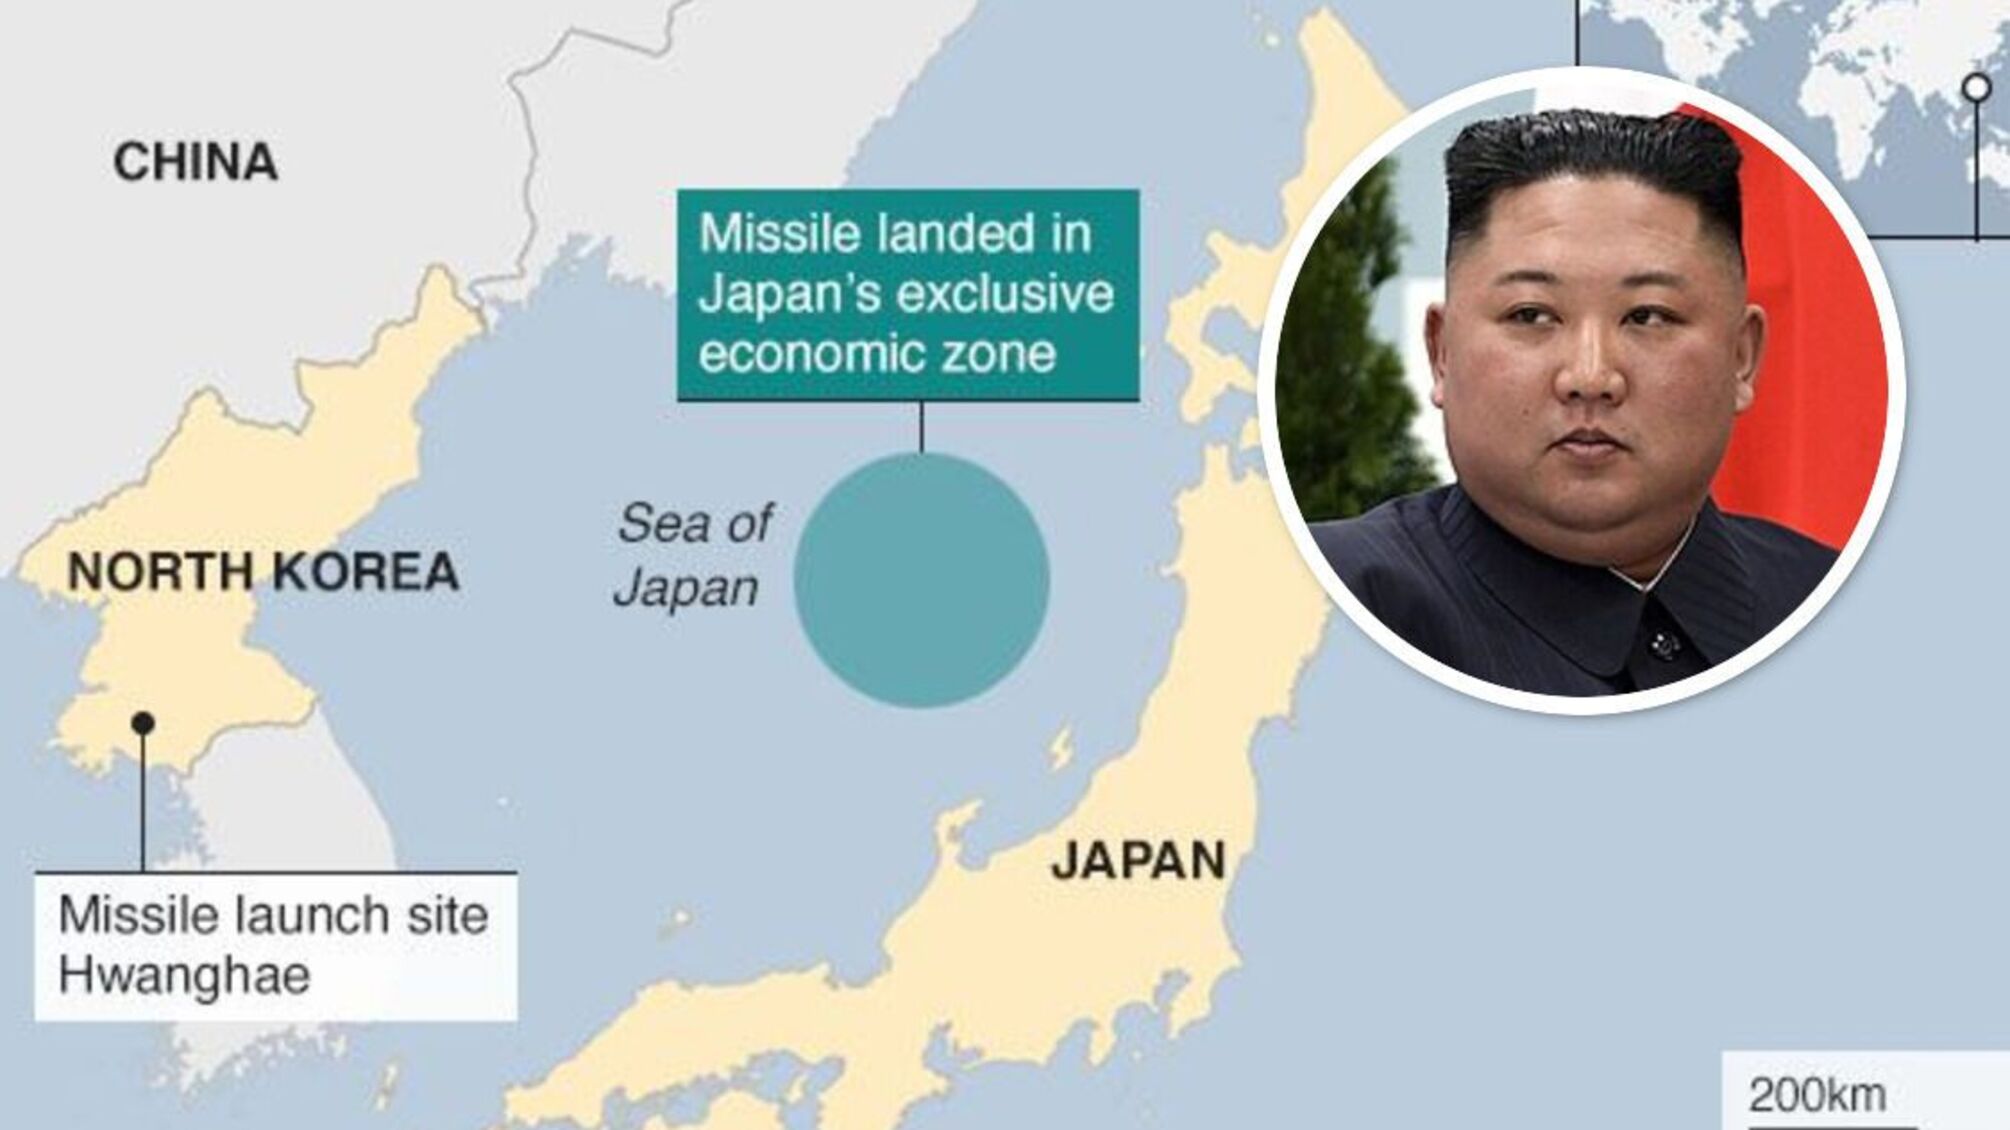 КНДР запустила баллистическую ракету в сторону Японии: что известно